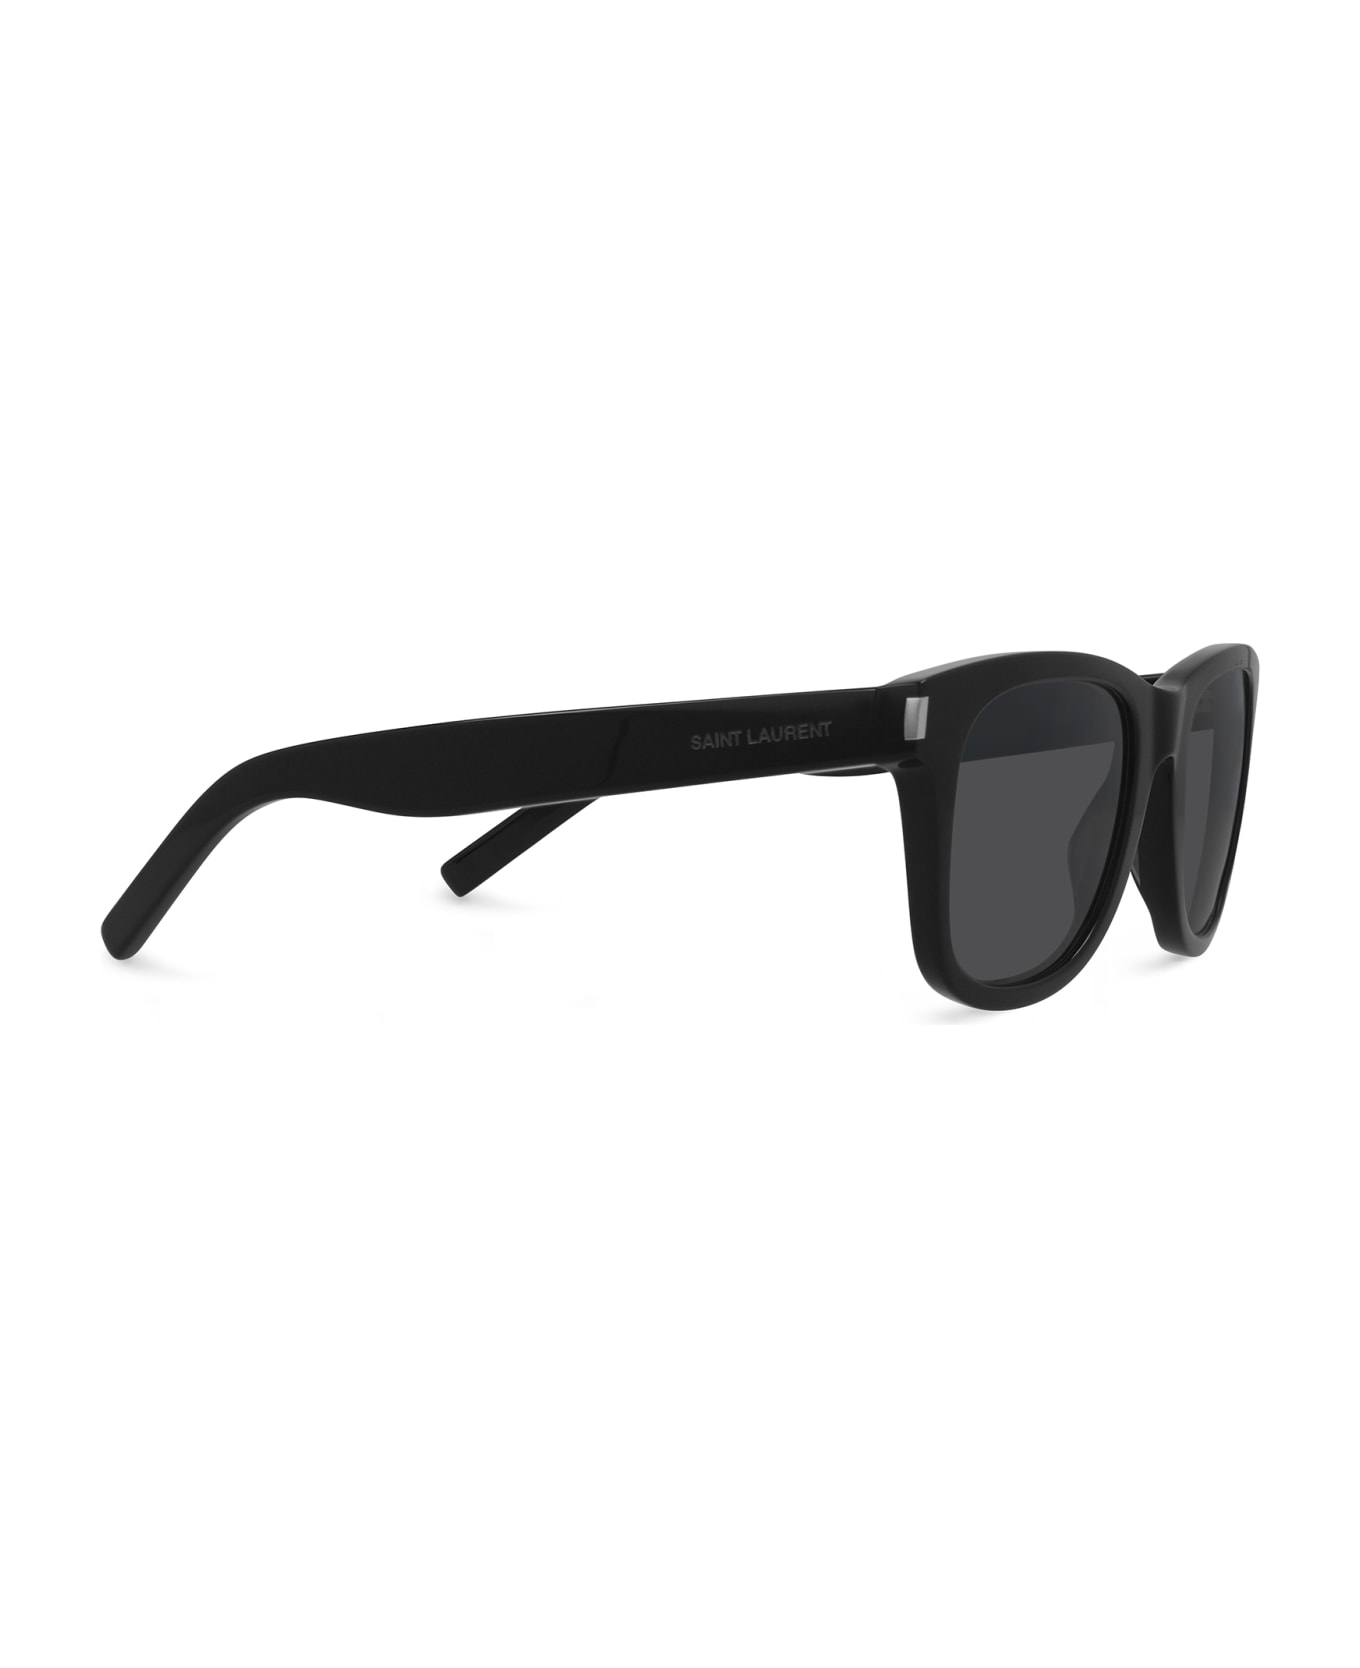 Saint Laurent Eyewear Sl 51 Black Sunglasses - Black